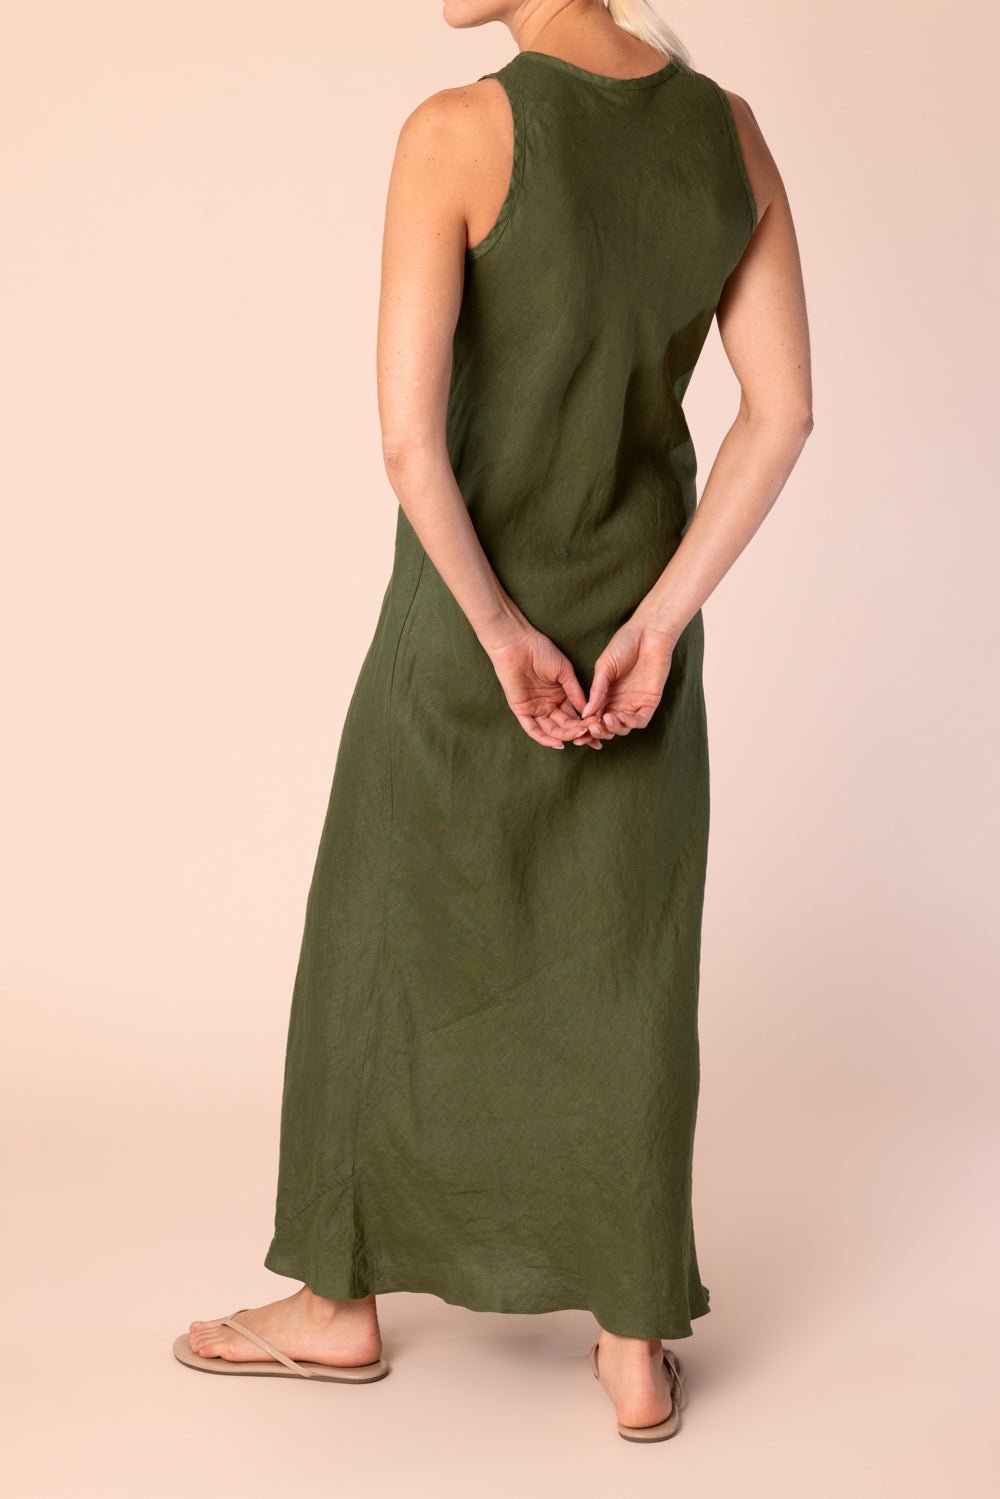 ASPESI-Sleeveless Vneck Dress - Verde-